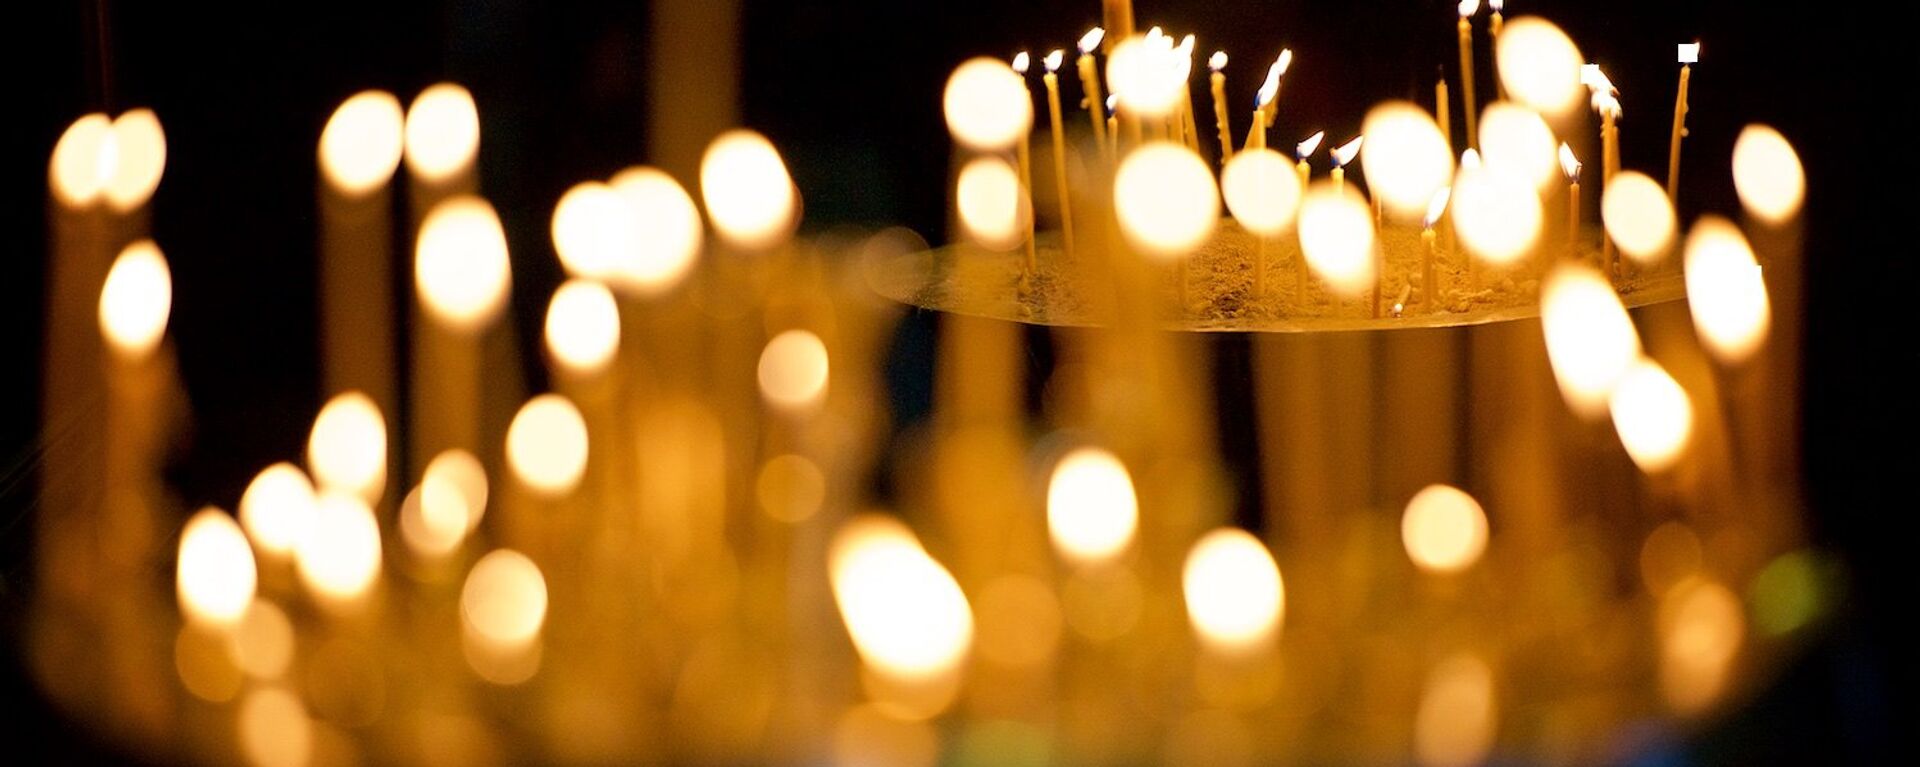  Горящие свечи у икон в кафедральном соборе Светицховели - Sputnik Грузия, 1920, 02.02.2021